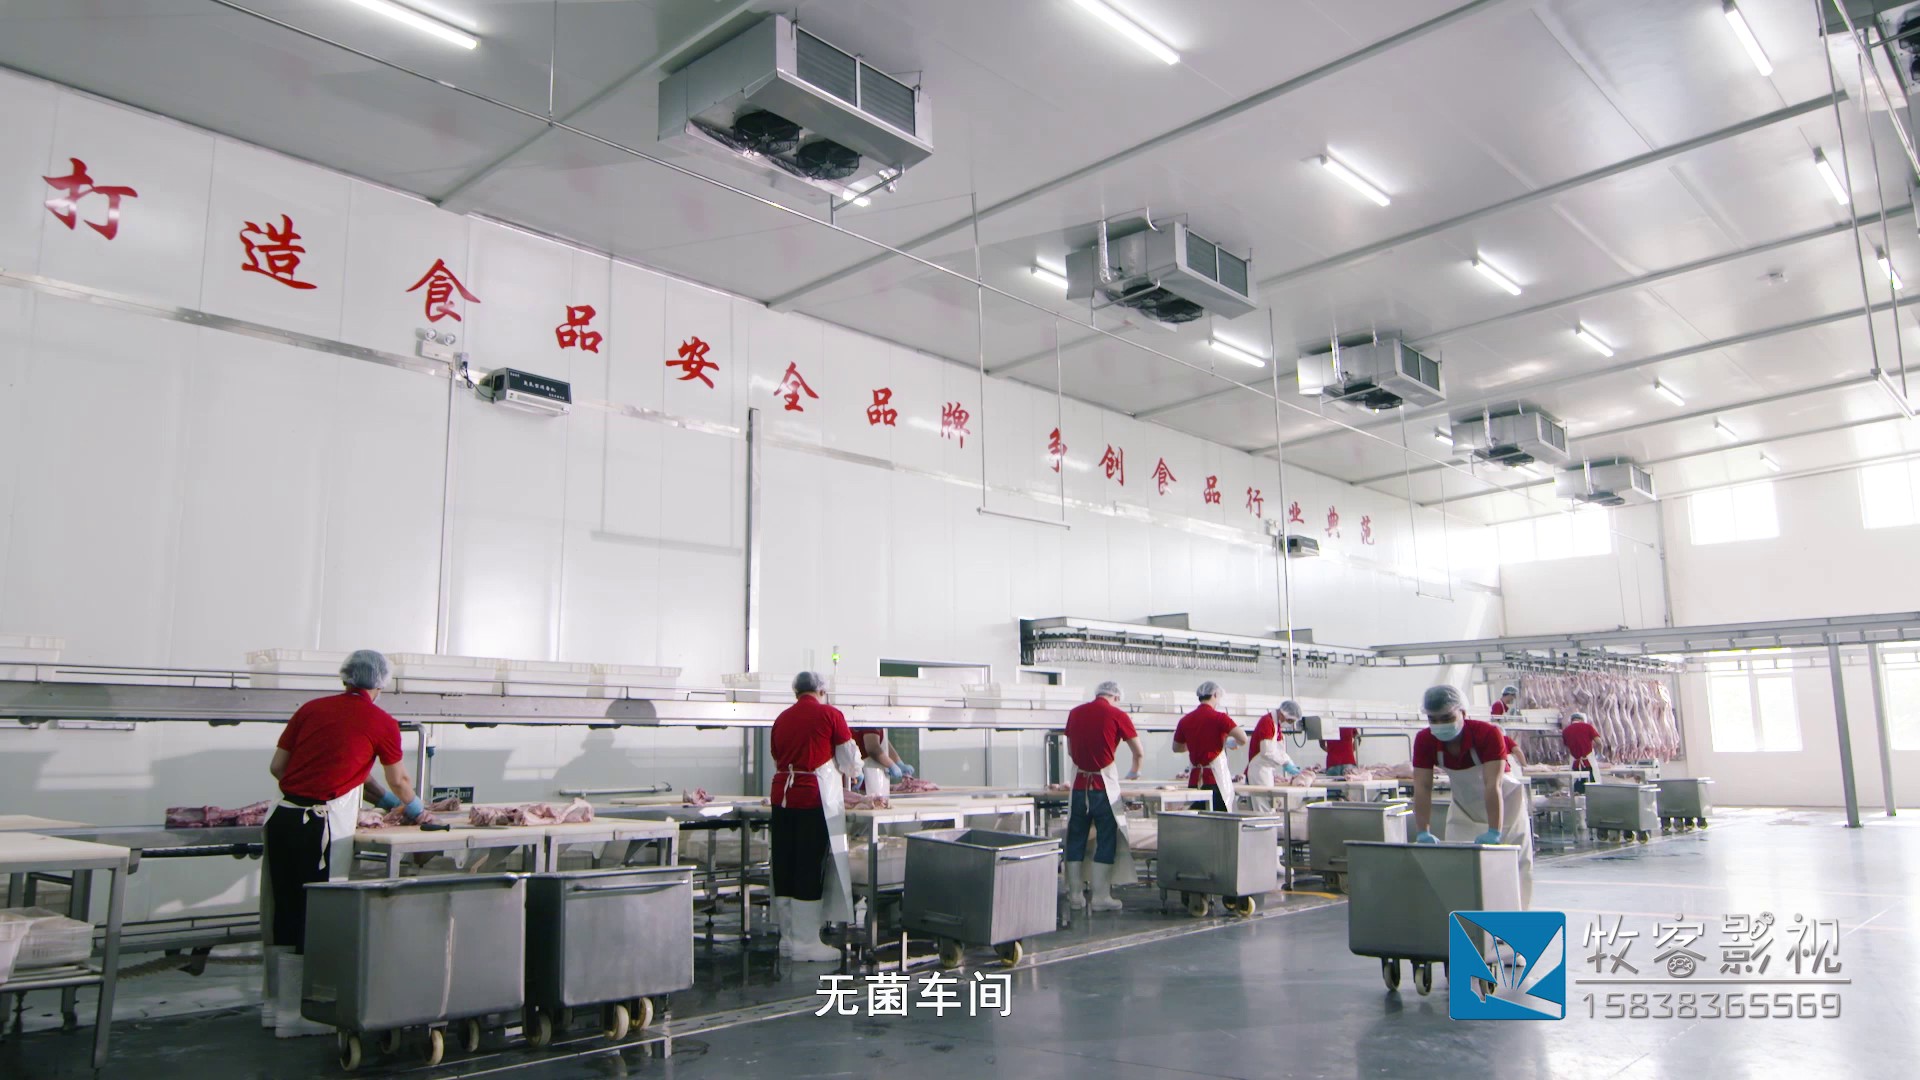 郑州宣传片拍摄：食品机械公司宣传片拍摄制作有哪些特殊要求